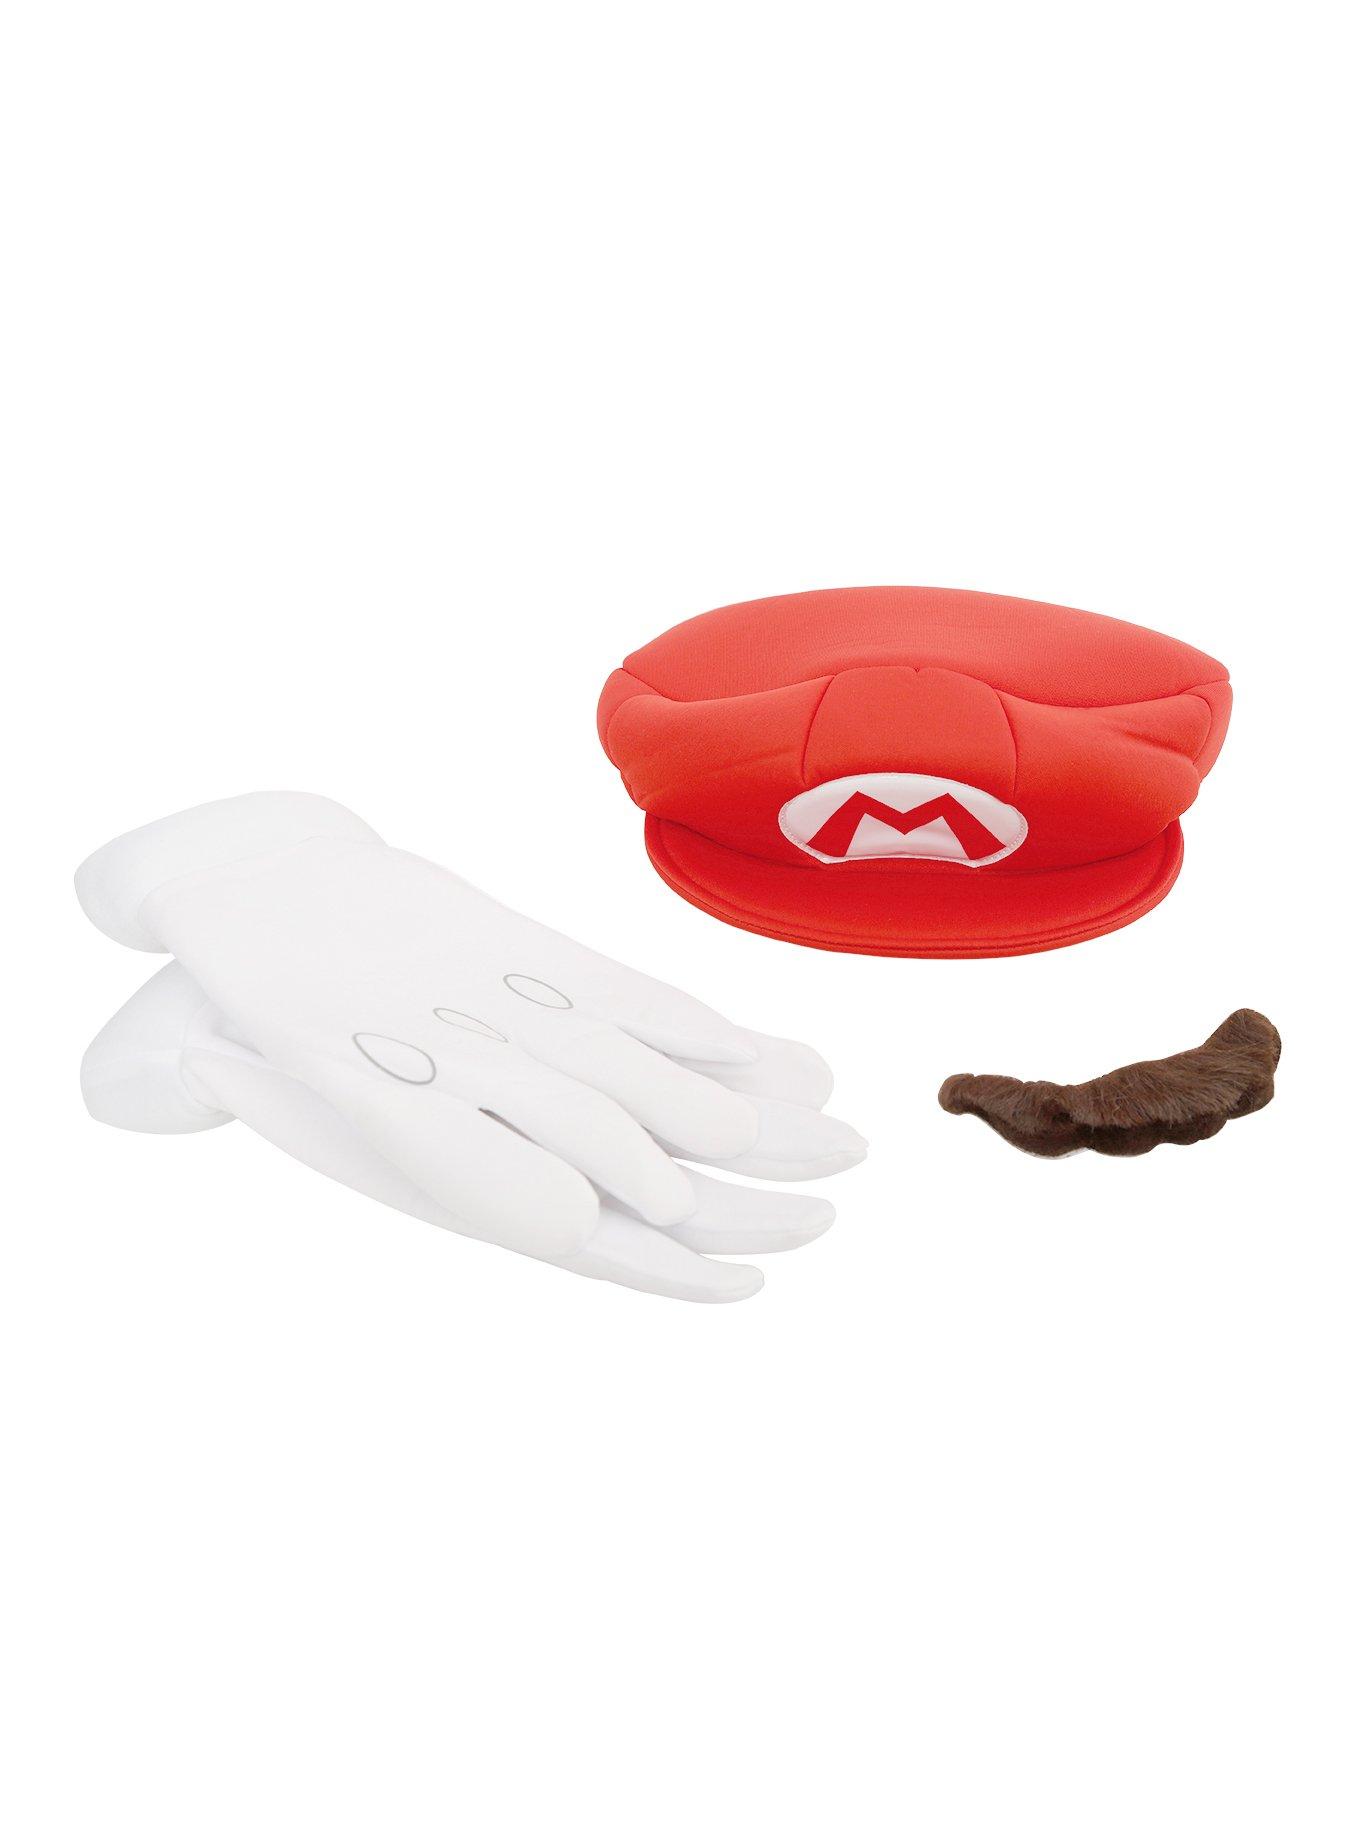 Super Mario Mario Costume Kit, , alternate